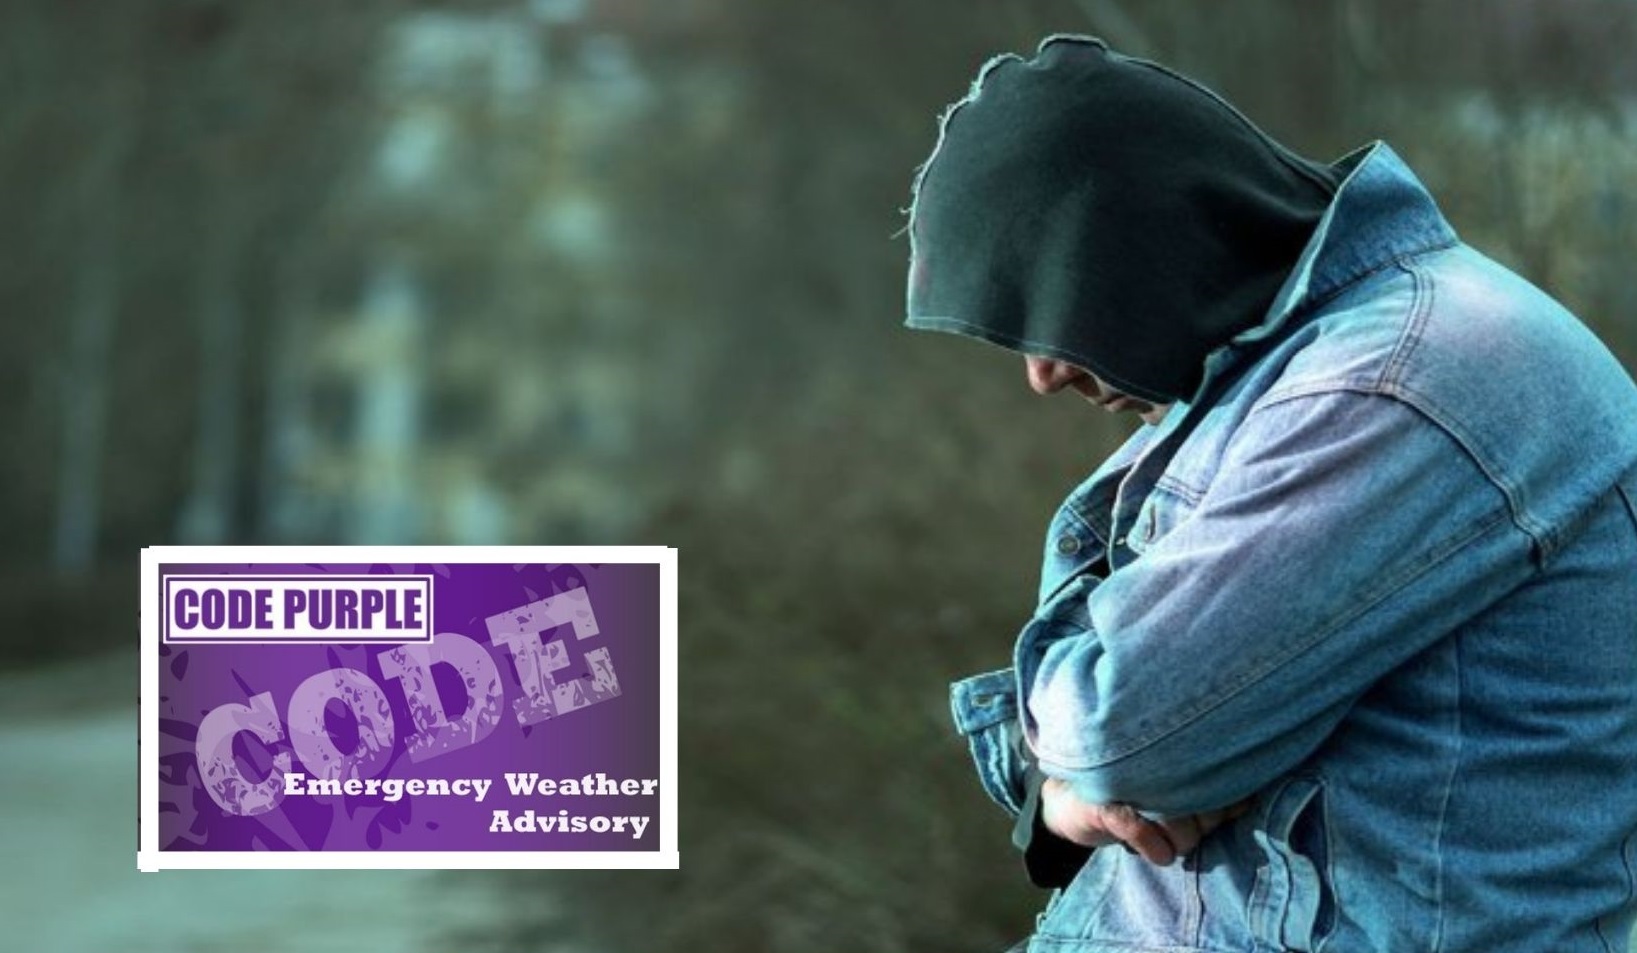 Purple bag program' for homeless seeks to address litter : r/asheville